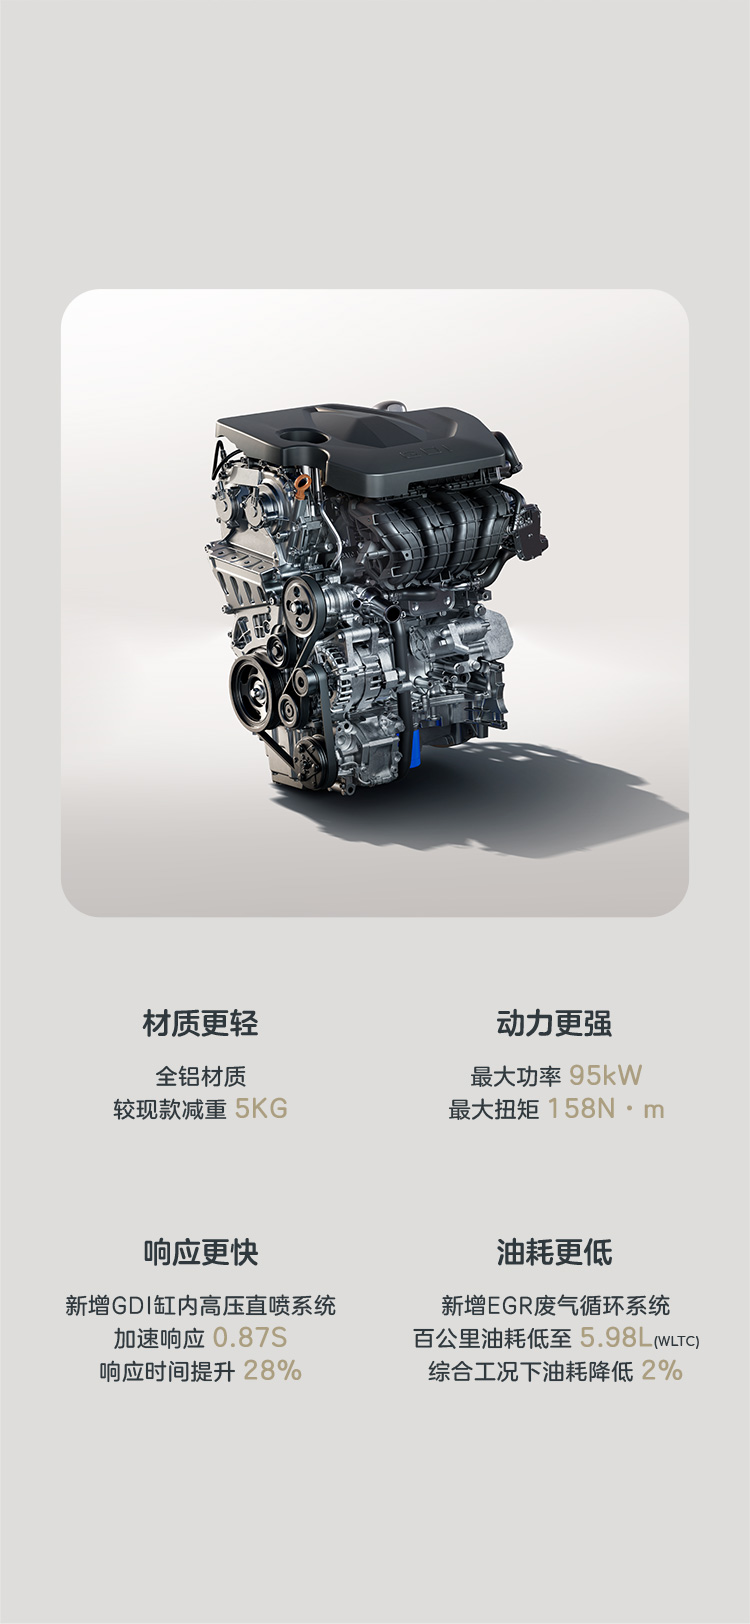 全新 1.5L GDI缸內高壓直噴全鋁發動機